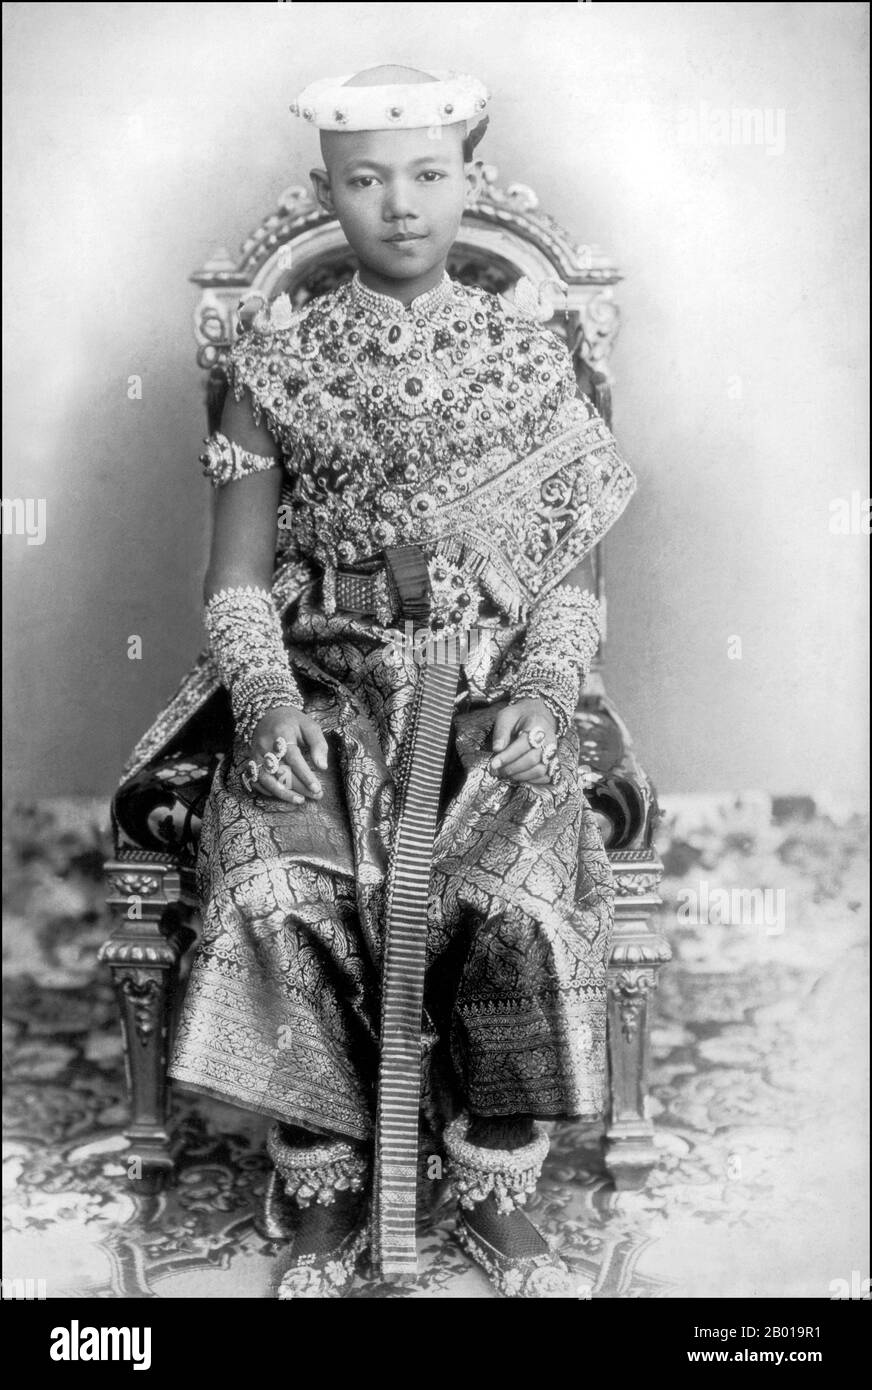 Thailand: König Ananda Mahidol (20. September 1925 – 9. Juni 1946) als Kind, 1930. Ananda Mahidol, auch bekannt als Rama VIII., war der achte Monarch Thailands unter dem Haus Chakri. Im März 1935 wurde er von der Nationalversammlung als König anerkannt. Er war ein neunjähriger Junge, der zu dieser Zeit in der Schweiz lebte. Im Dezember 1945 kehrte er nach Thailand zurück, starb aber 1946 unter geheimnisvollen Umständen. Stockfoto